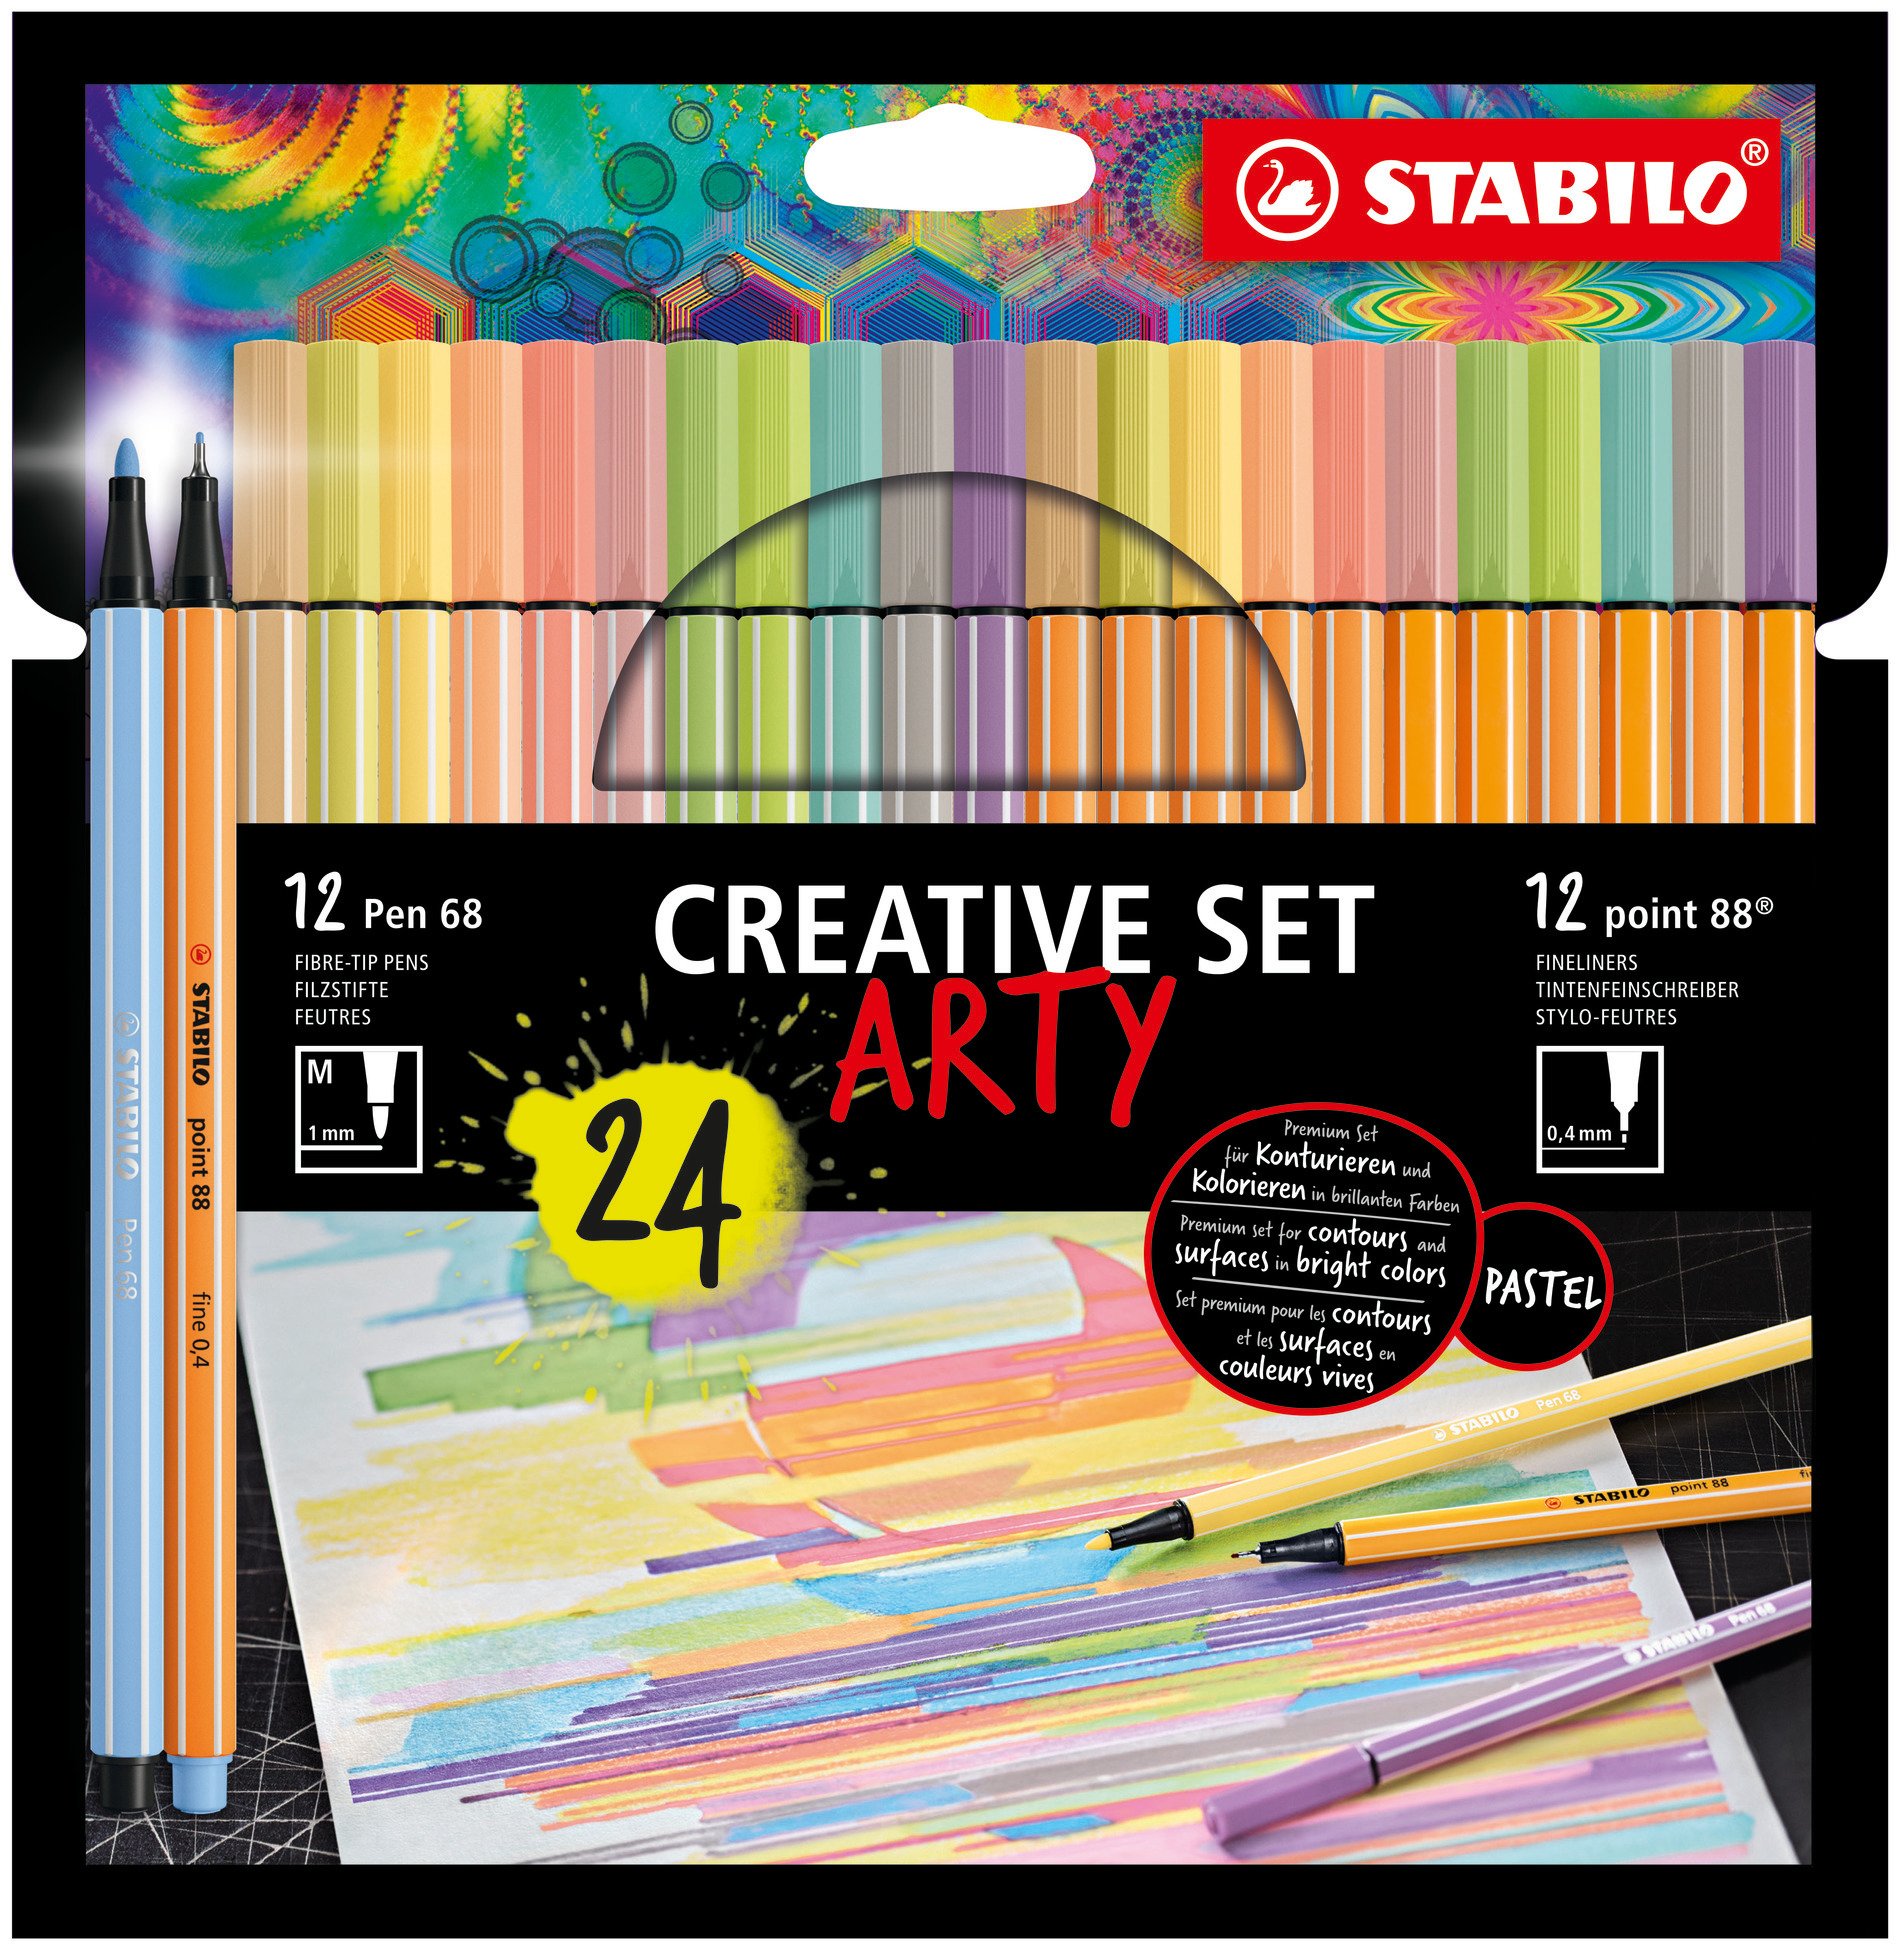 Premium-Filzstift STABILO Pen 68 und Fineliner STABILO point 88 ARTY Creative Set Pastell